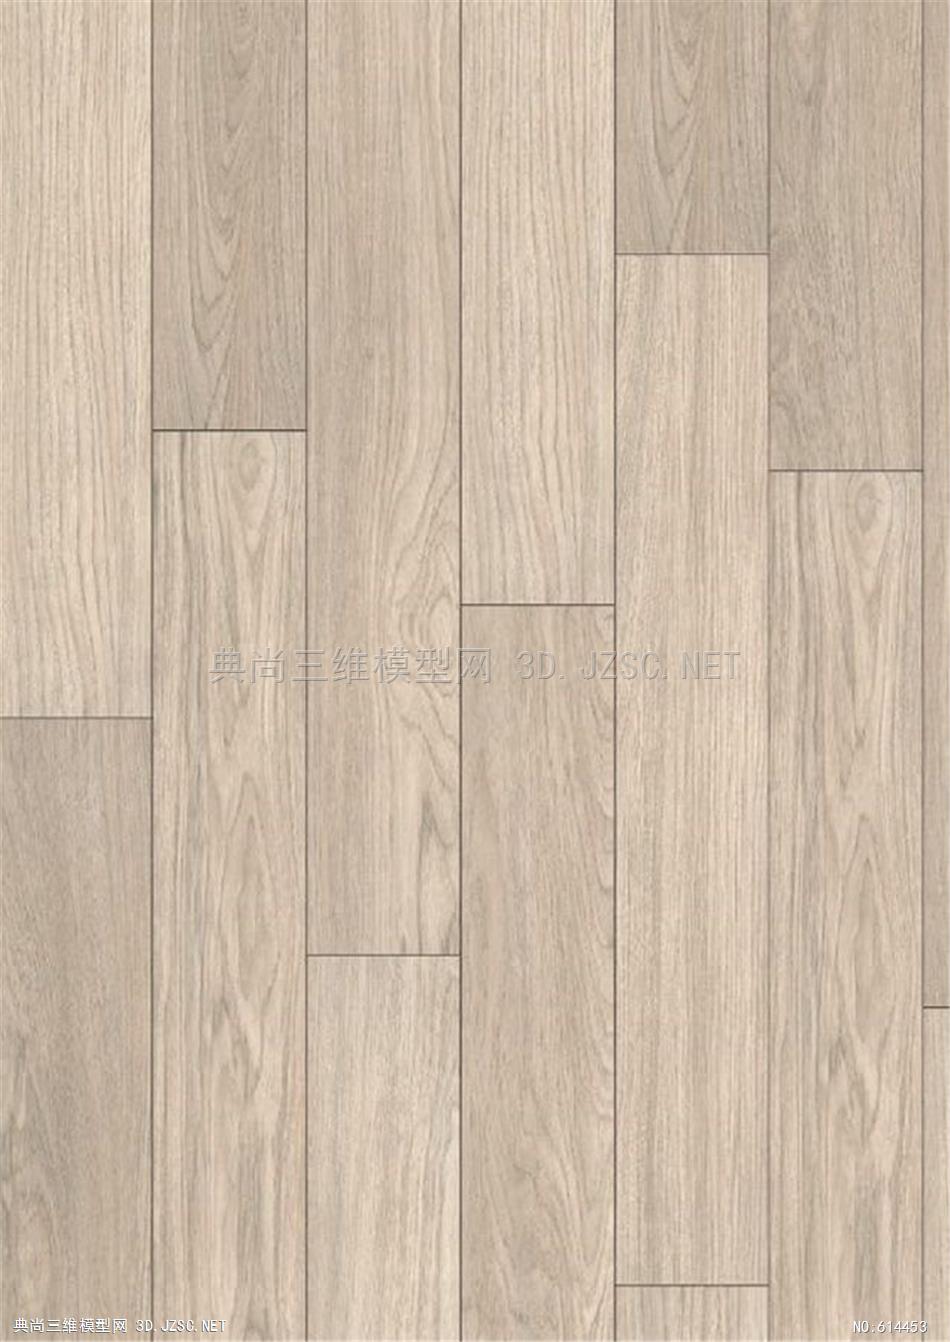 木地板 木纹 木材  高清材质贴图 (137)